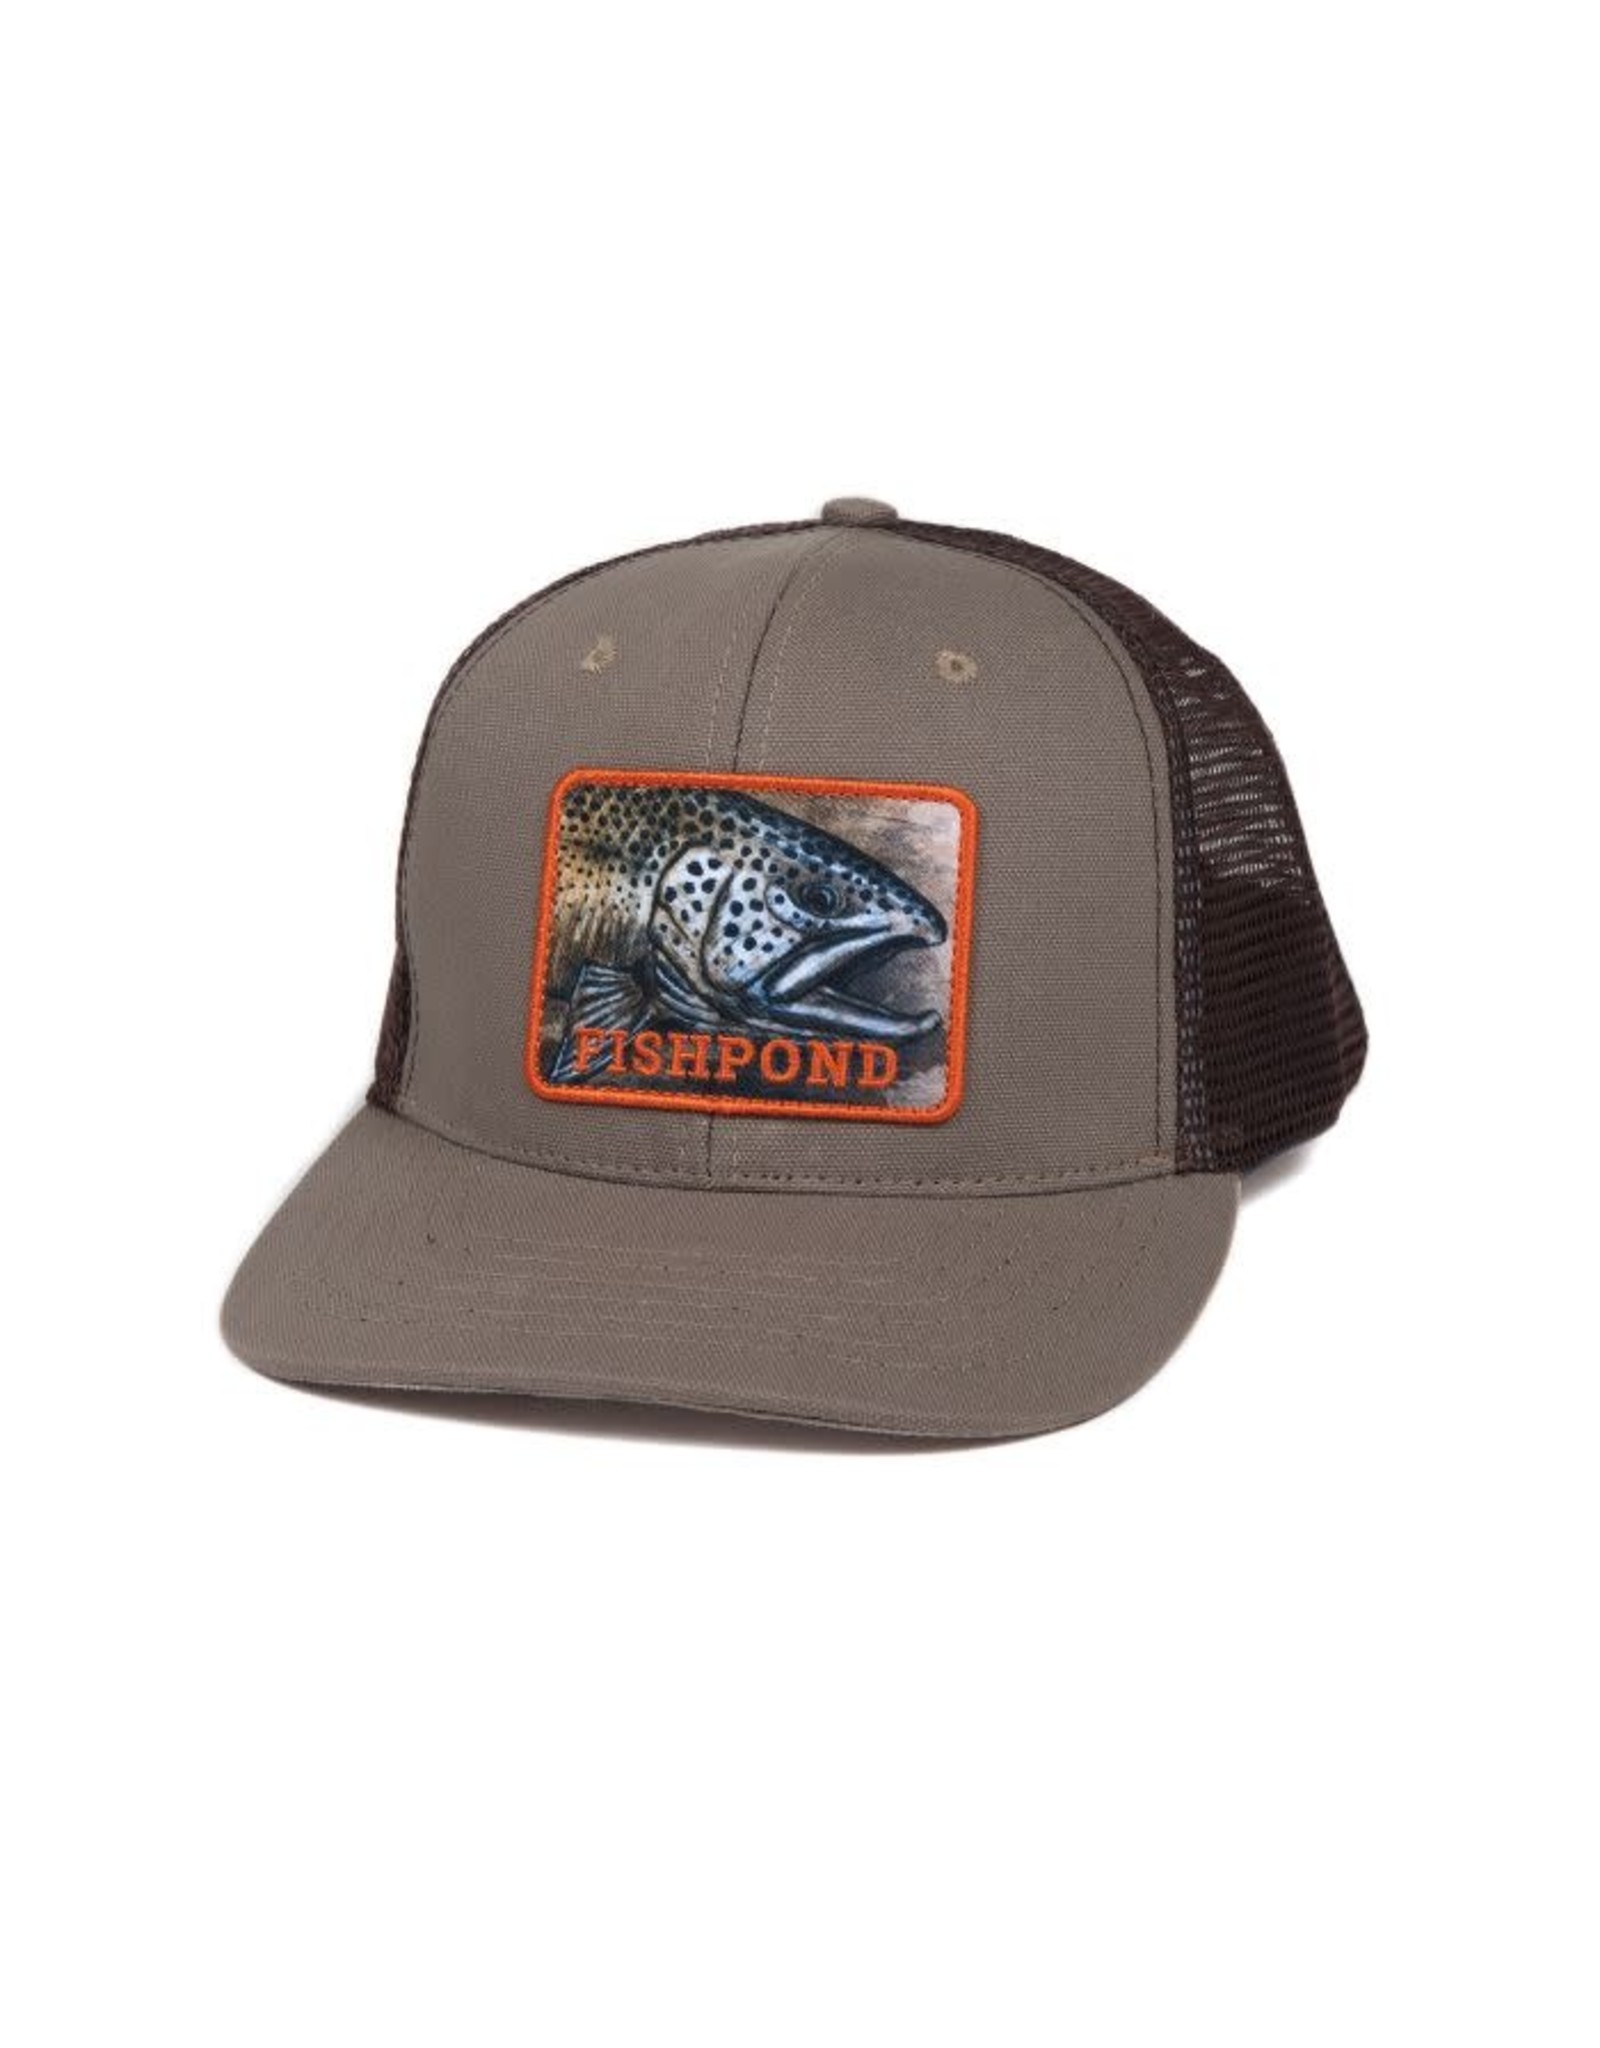 FISHPOND Fishpond Slab Trucker Hat - Sandstone/Brown